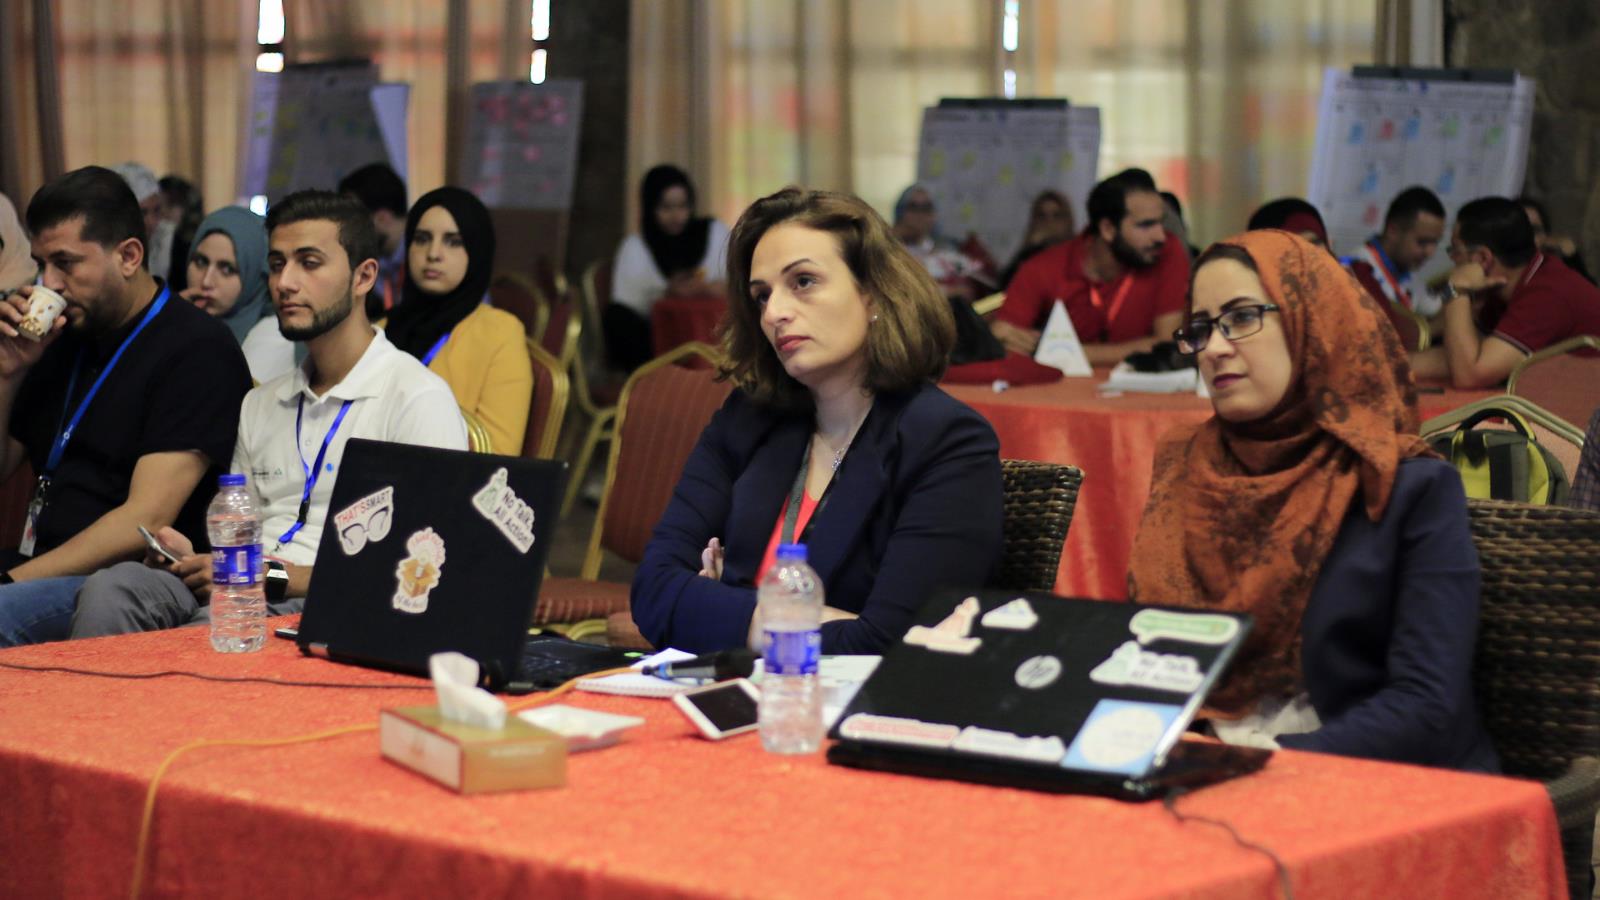  لجنة تحكيم الفعالية تقيم أفكار المشاريع الريادية المطروحة من المرشحين (الجزيرة)